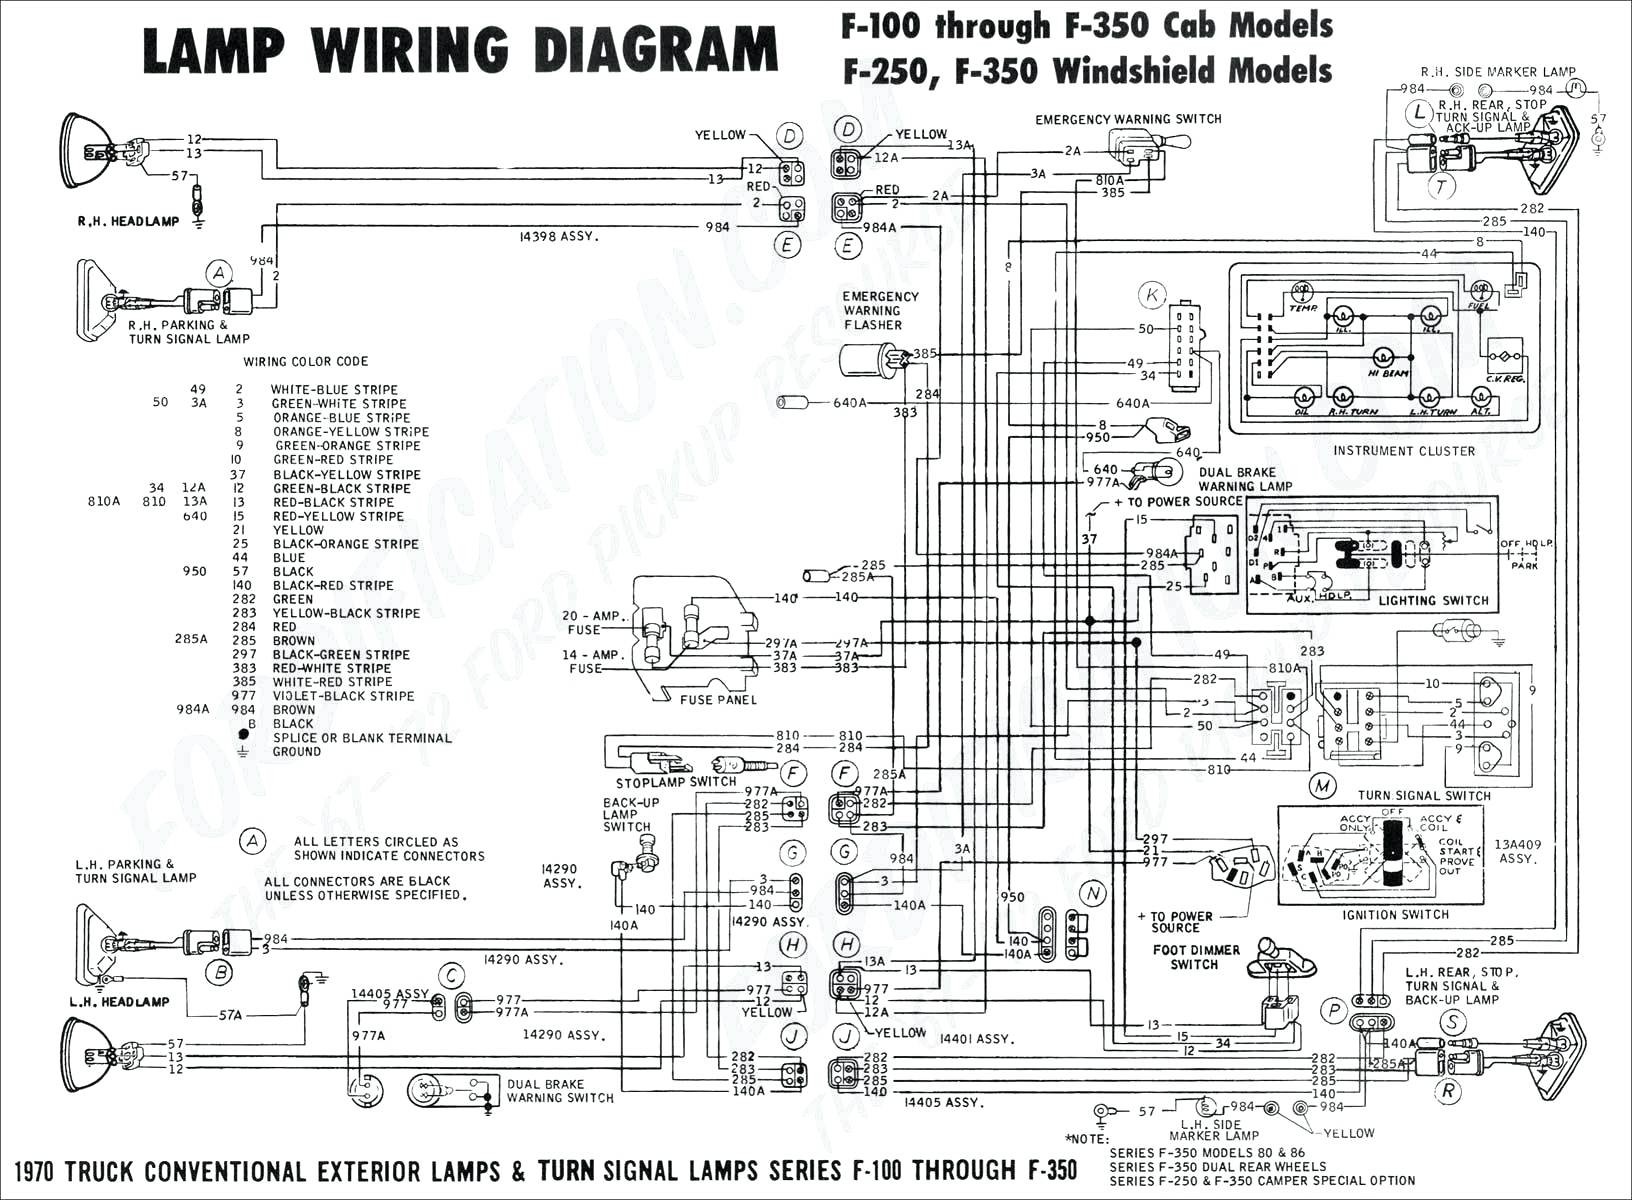 2016 Ram 1500 Schematic Dodge 2500 Trailer Wiring Diagram Wiring Diagram Data